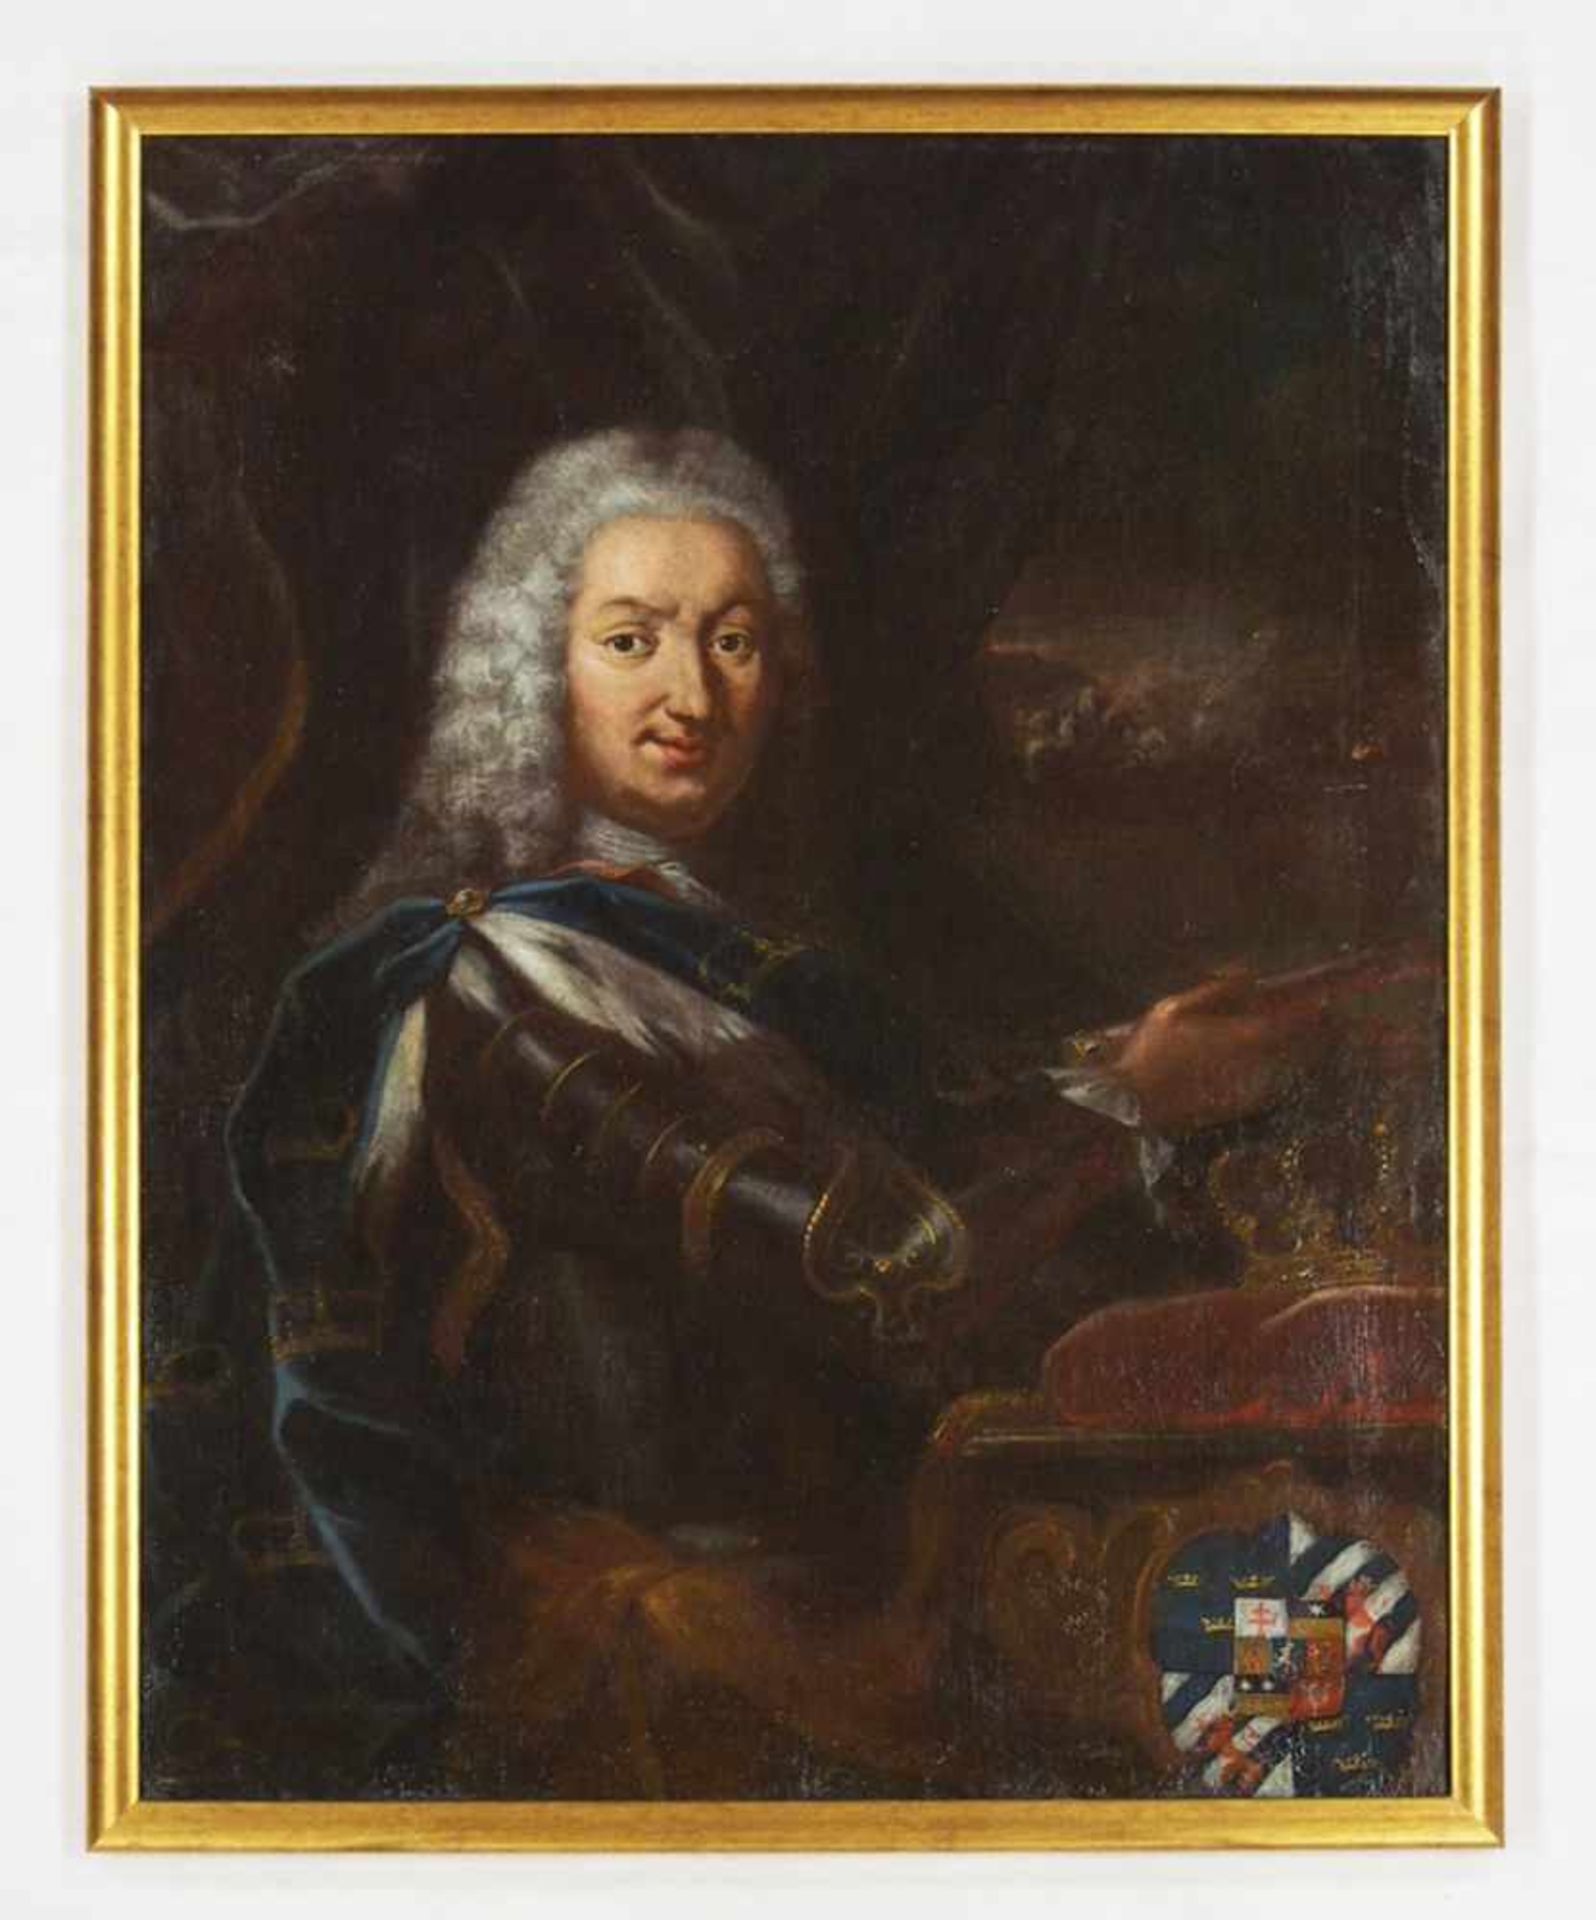 ITALIENISCHER MEISTER18. Jh.Porträt Friedrich I. von SchwedenÖl auf Leinwand, doubliert, 92 x 70 cm, - Bild 2 aus 4